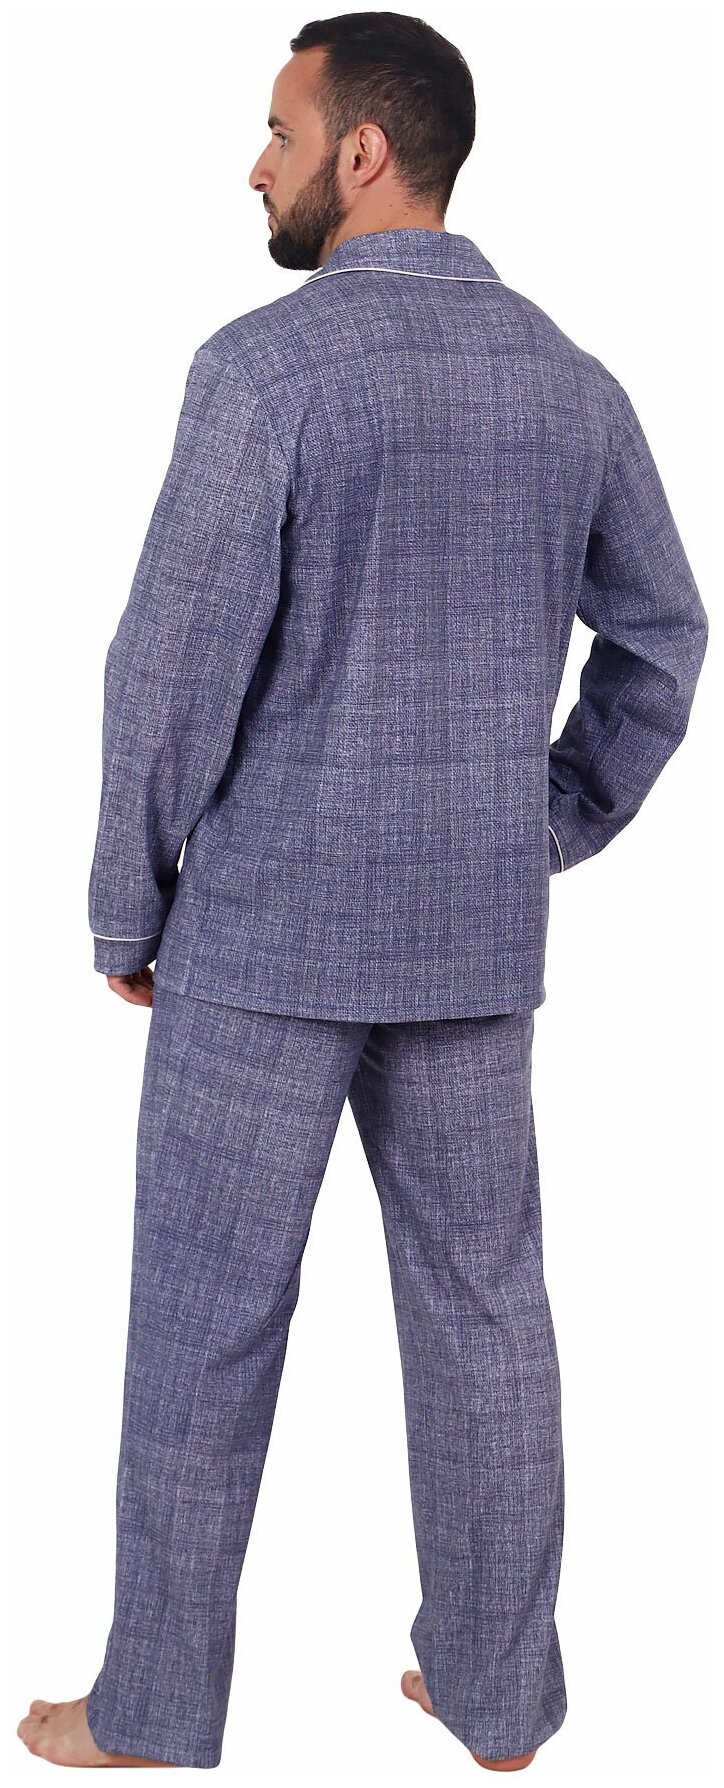 Мужская пижама Вояж Синий размер 48 Кулирка Оптима трикотаж рубашка на пуговицах с отложным воротником брюки с карманами - фотография № 2